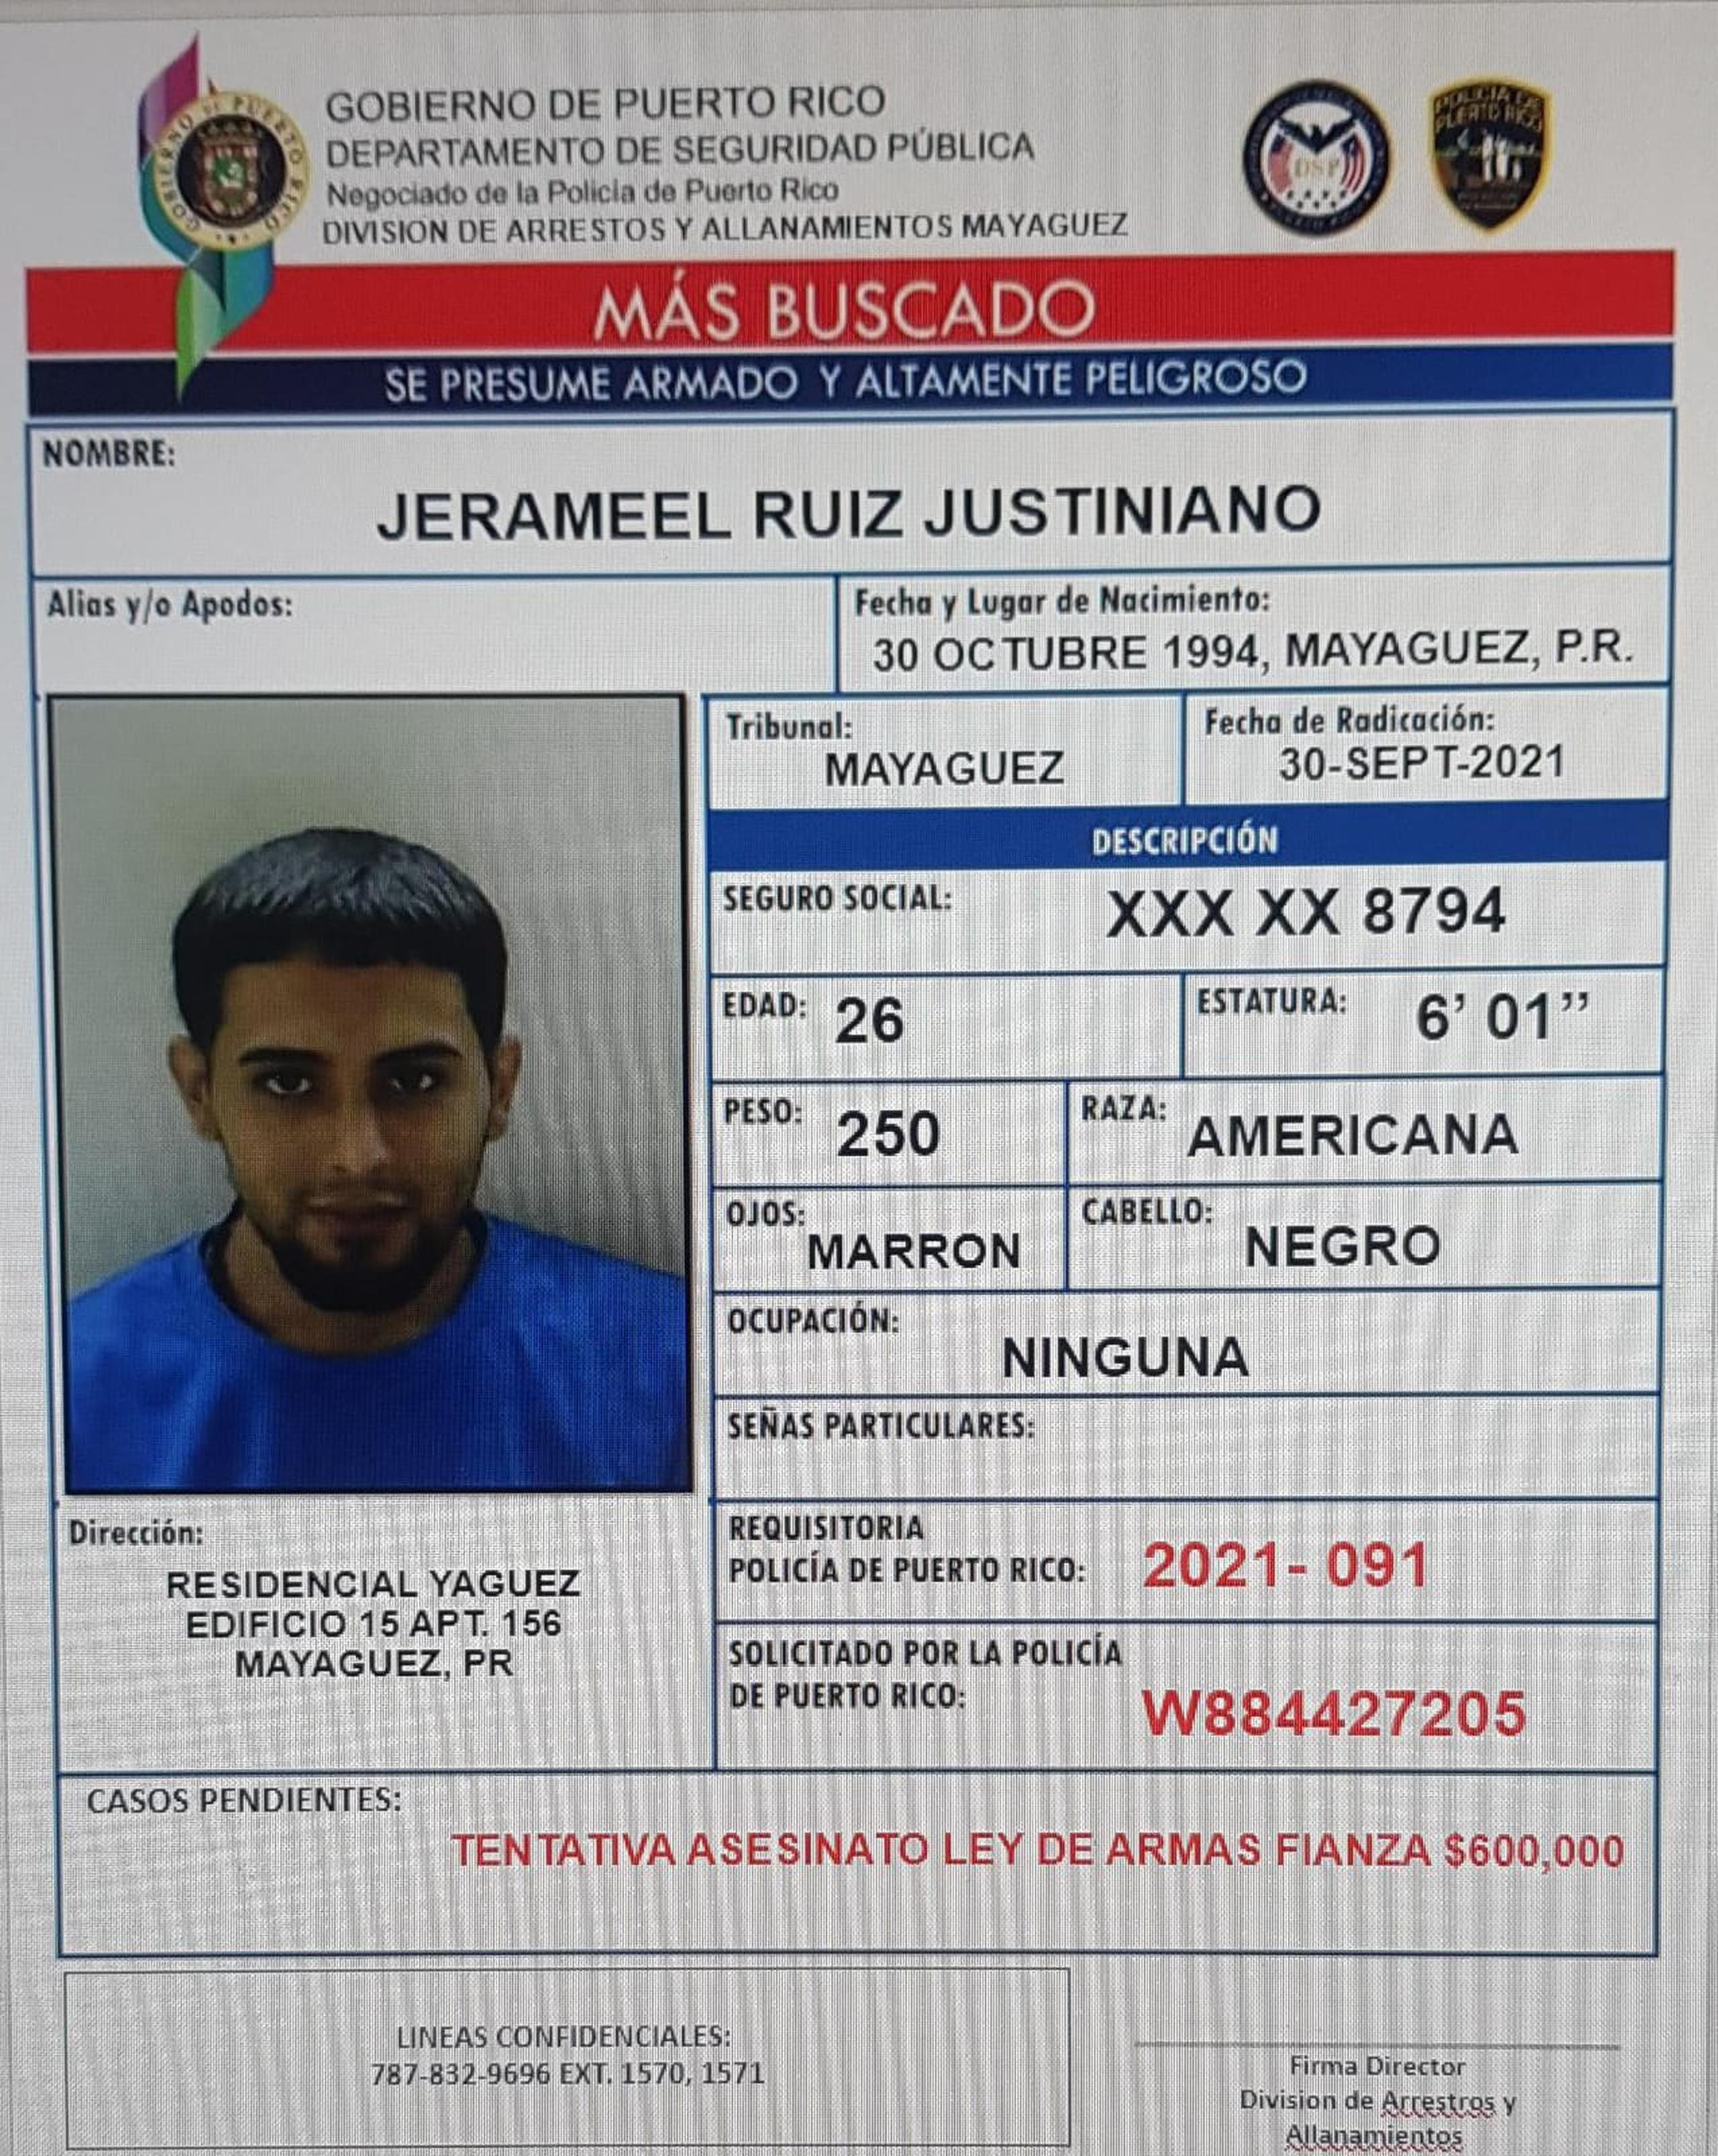 Contra Jerameel Ruiz Justiniano pesaba una orden de arresto con una fianza de $600,000.00, por cargos de tentativa de asesinato y violación a la Ley de Armas.